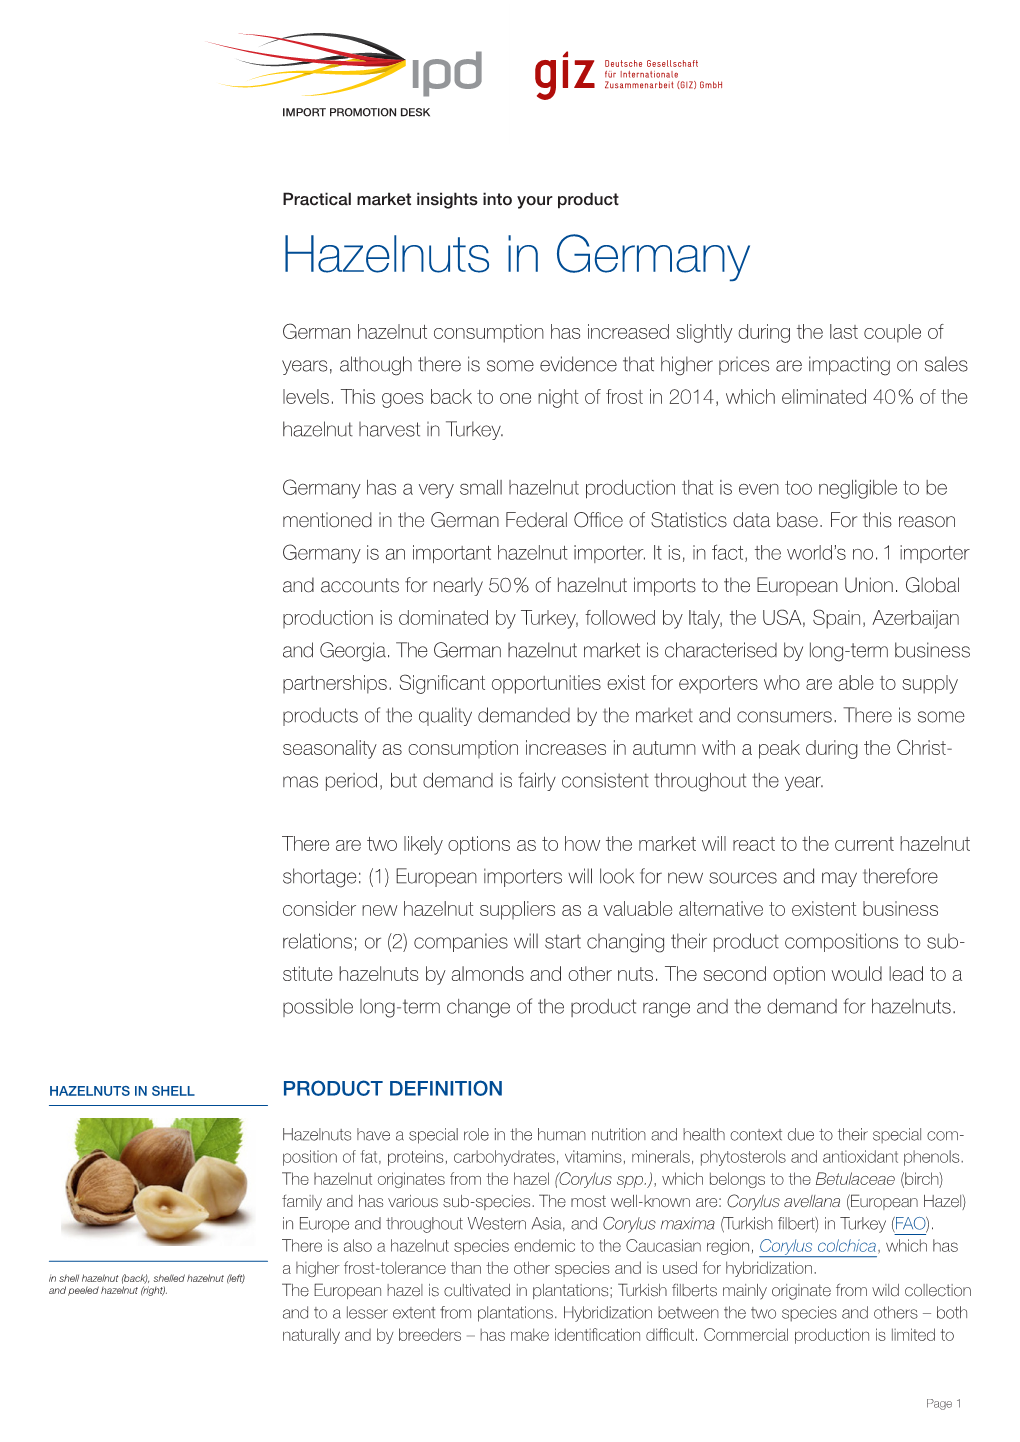 Hazelnuts in Germany